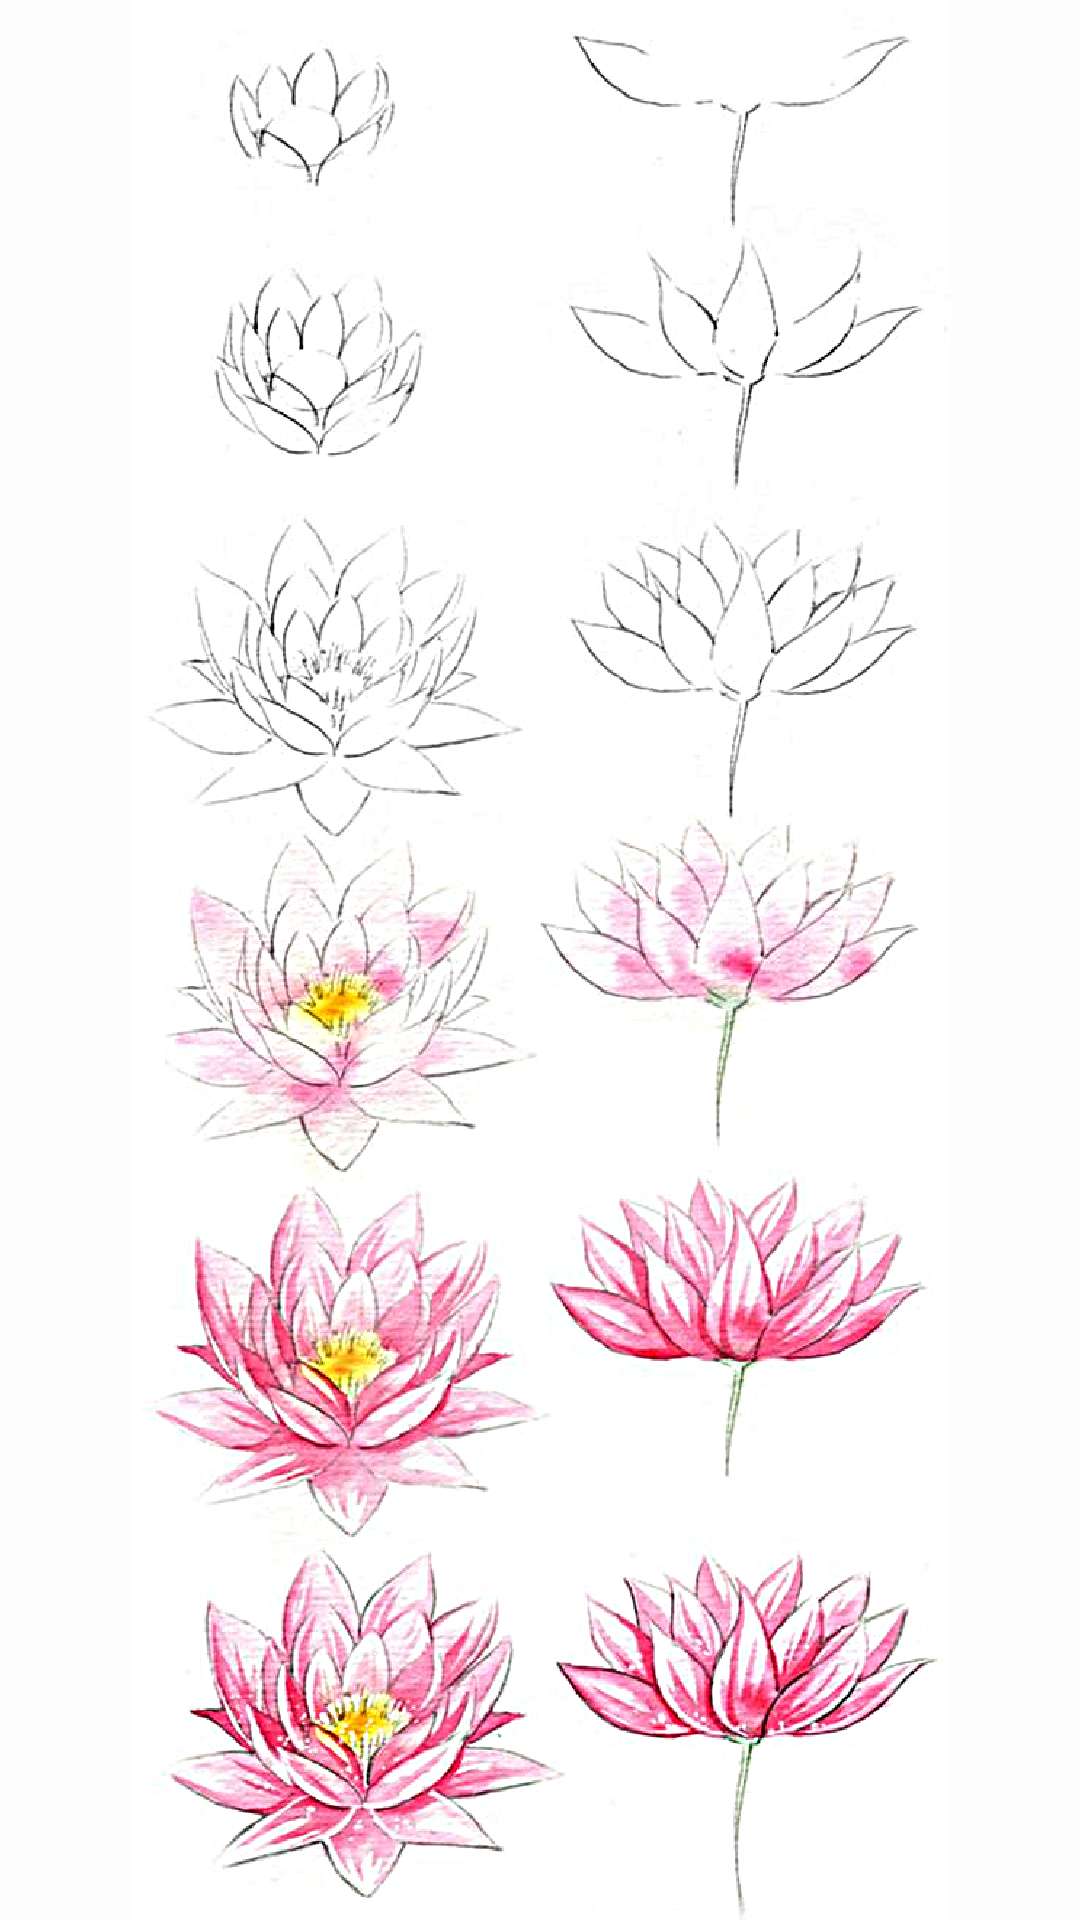 16 hình vẽ hoa sen bằng bút chì tuyệt đẹp